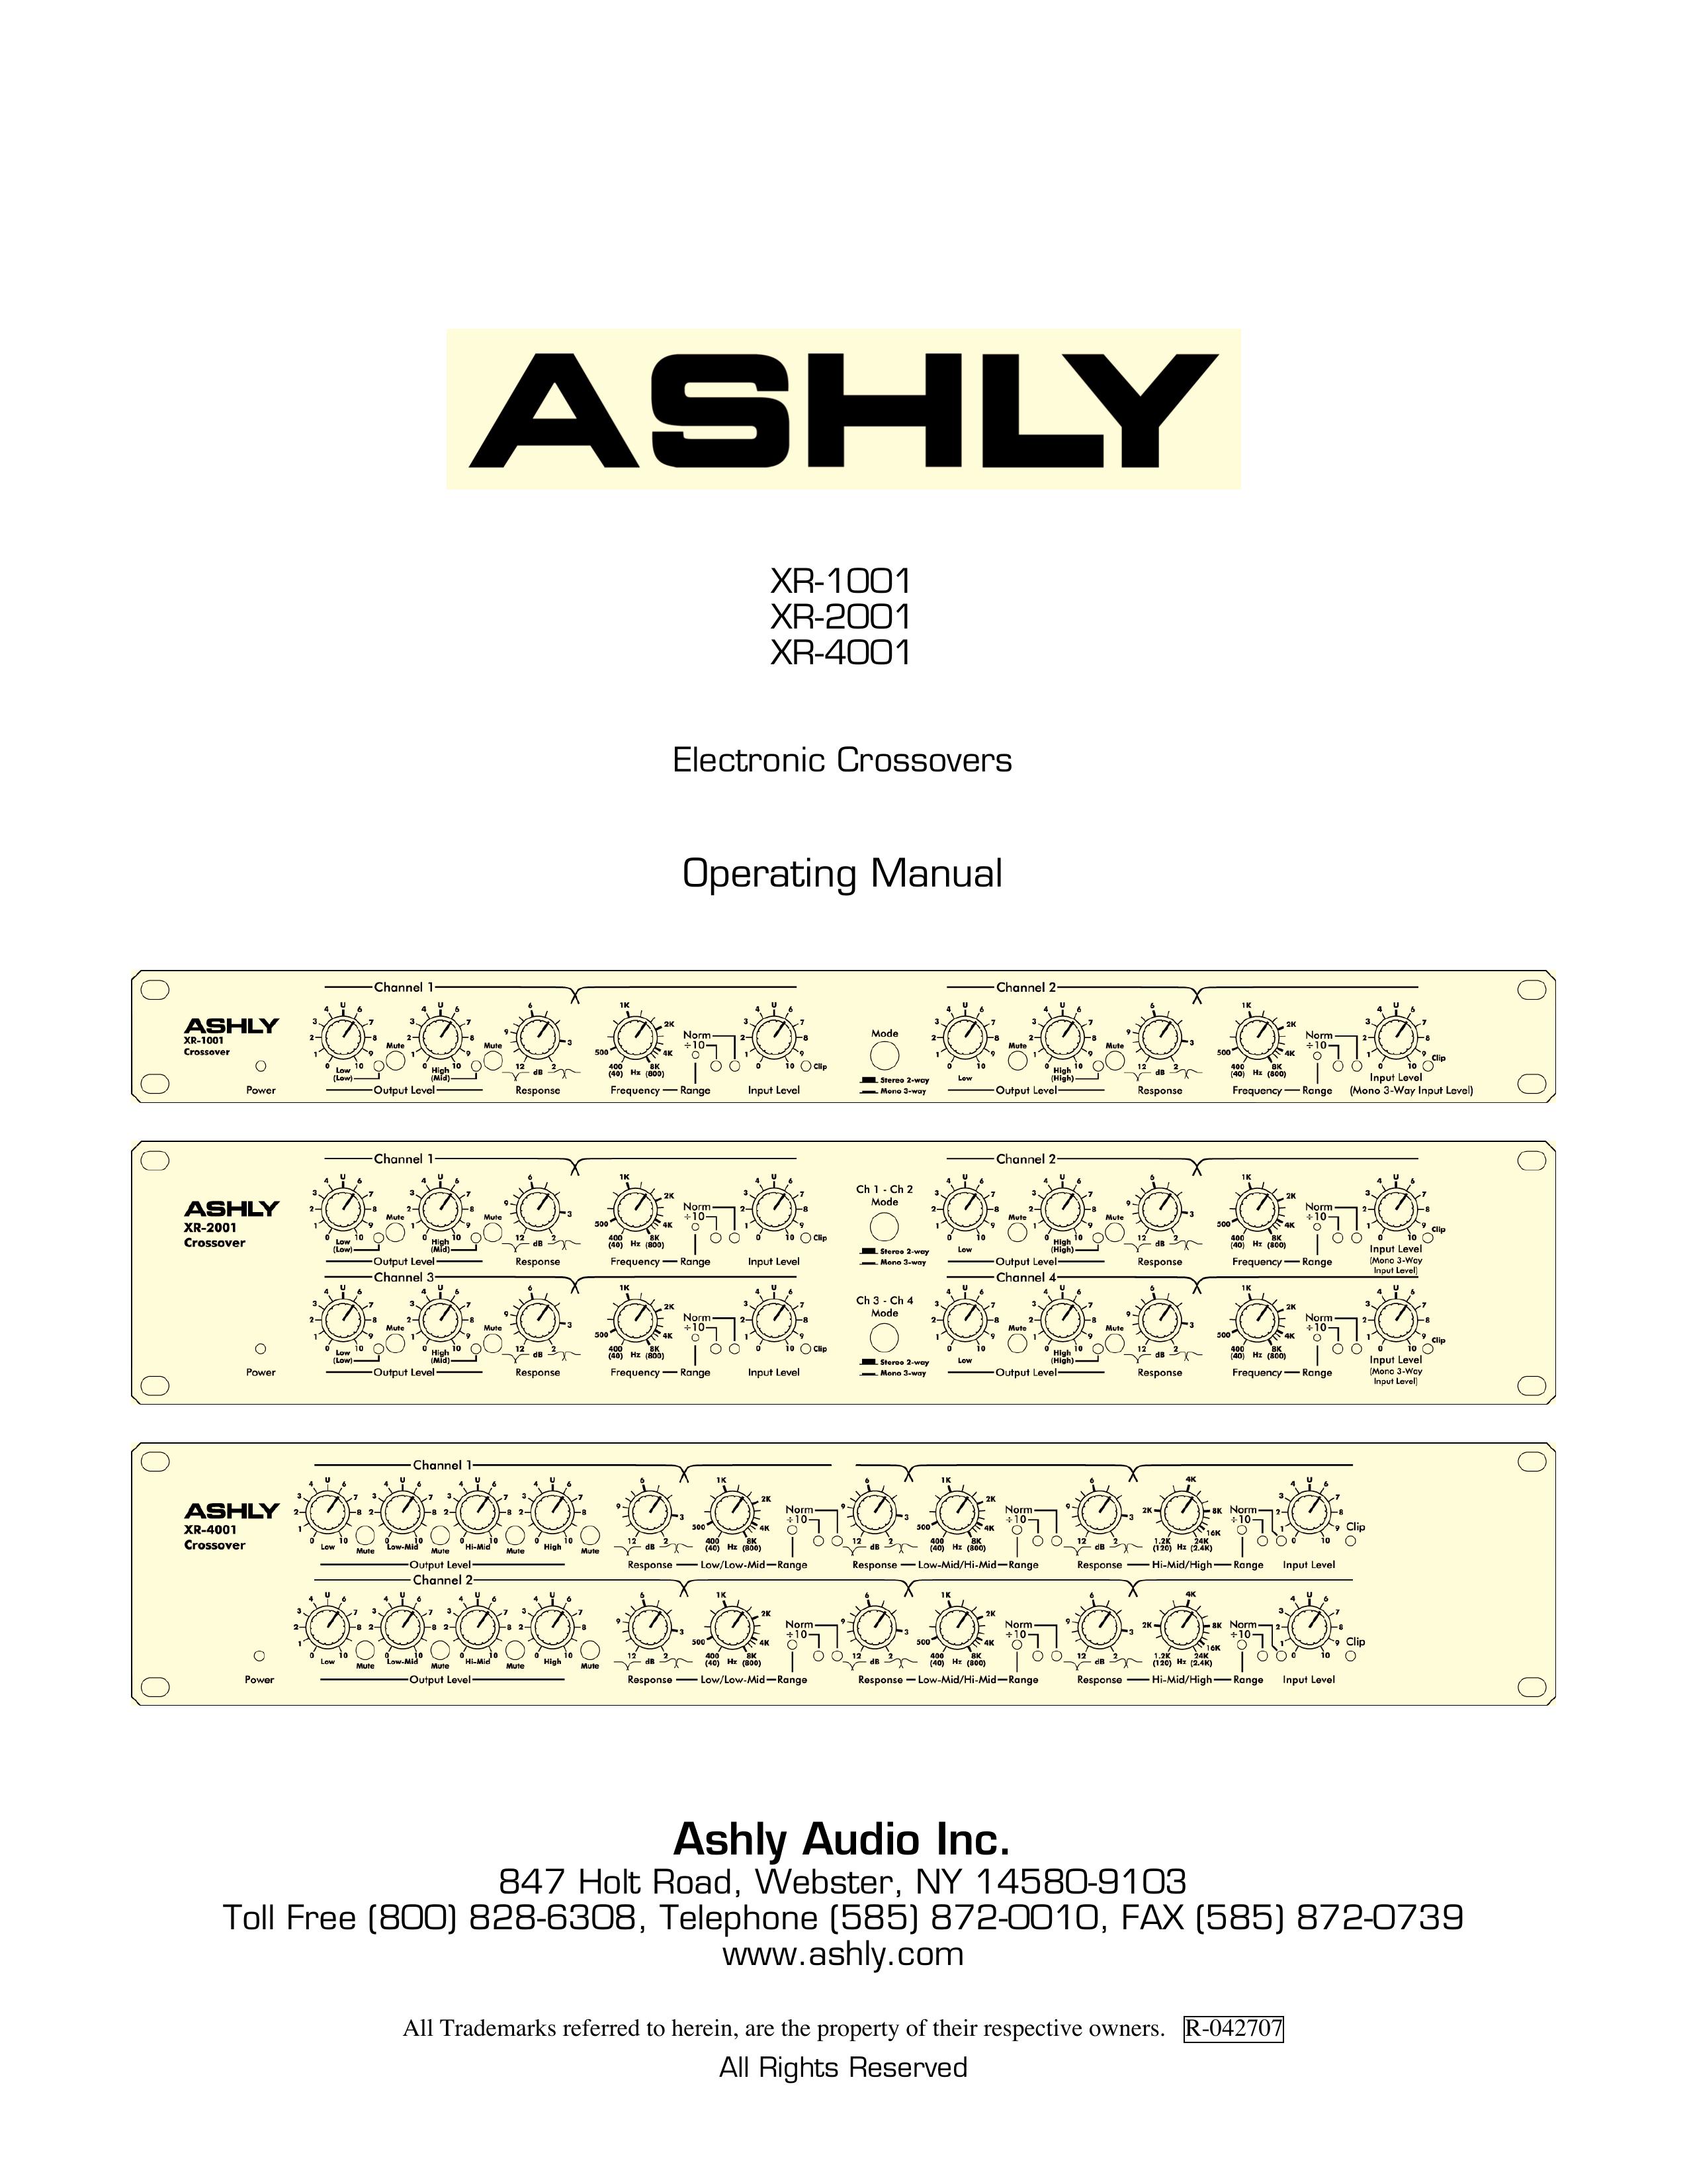 Ashly XR-2001 Refrigerator User Manual